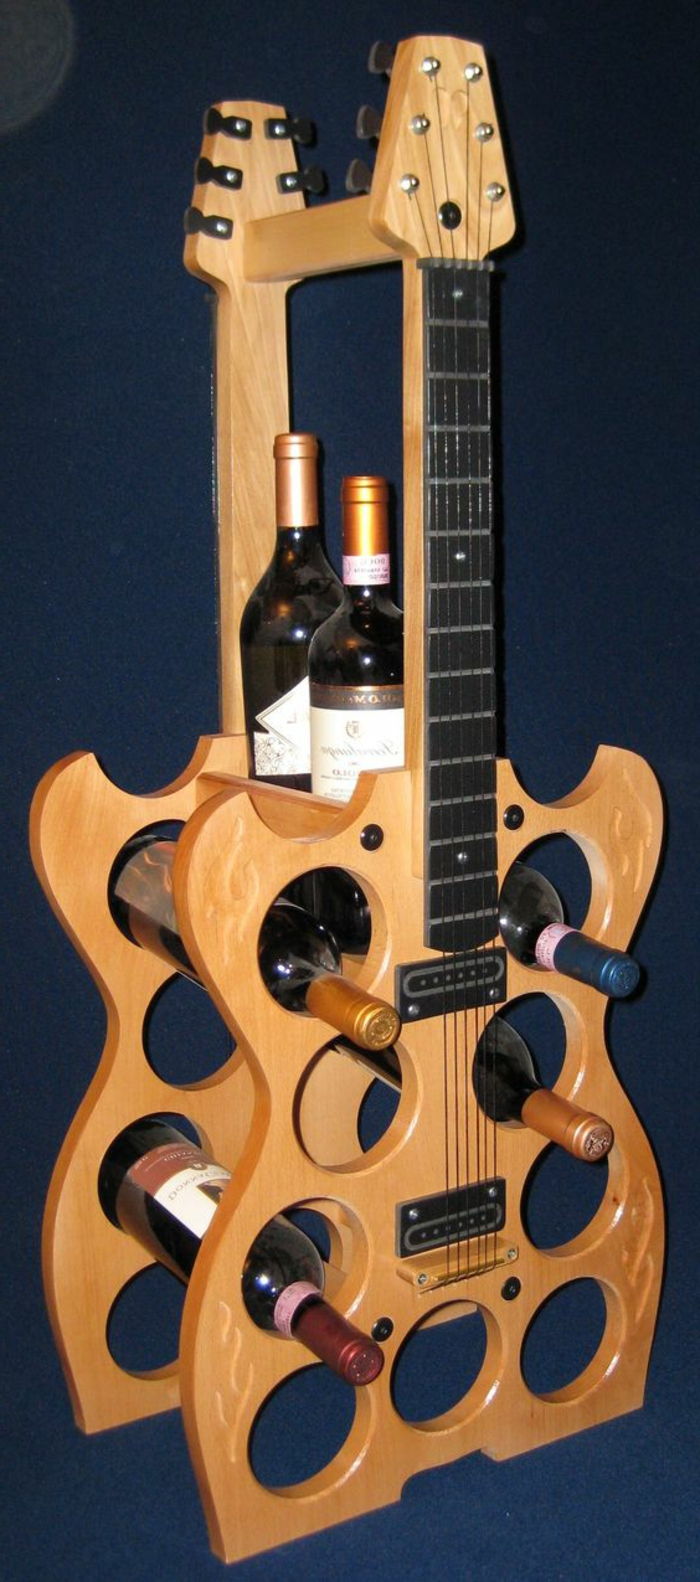 wijnrek voor de muur of voor de kamer als decoratie om de oude gitaren te herbouwen en er een kast van te maken